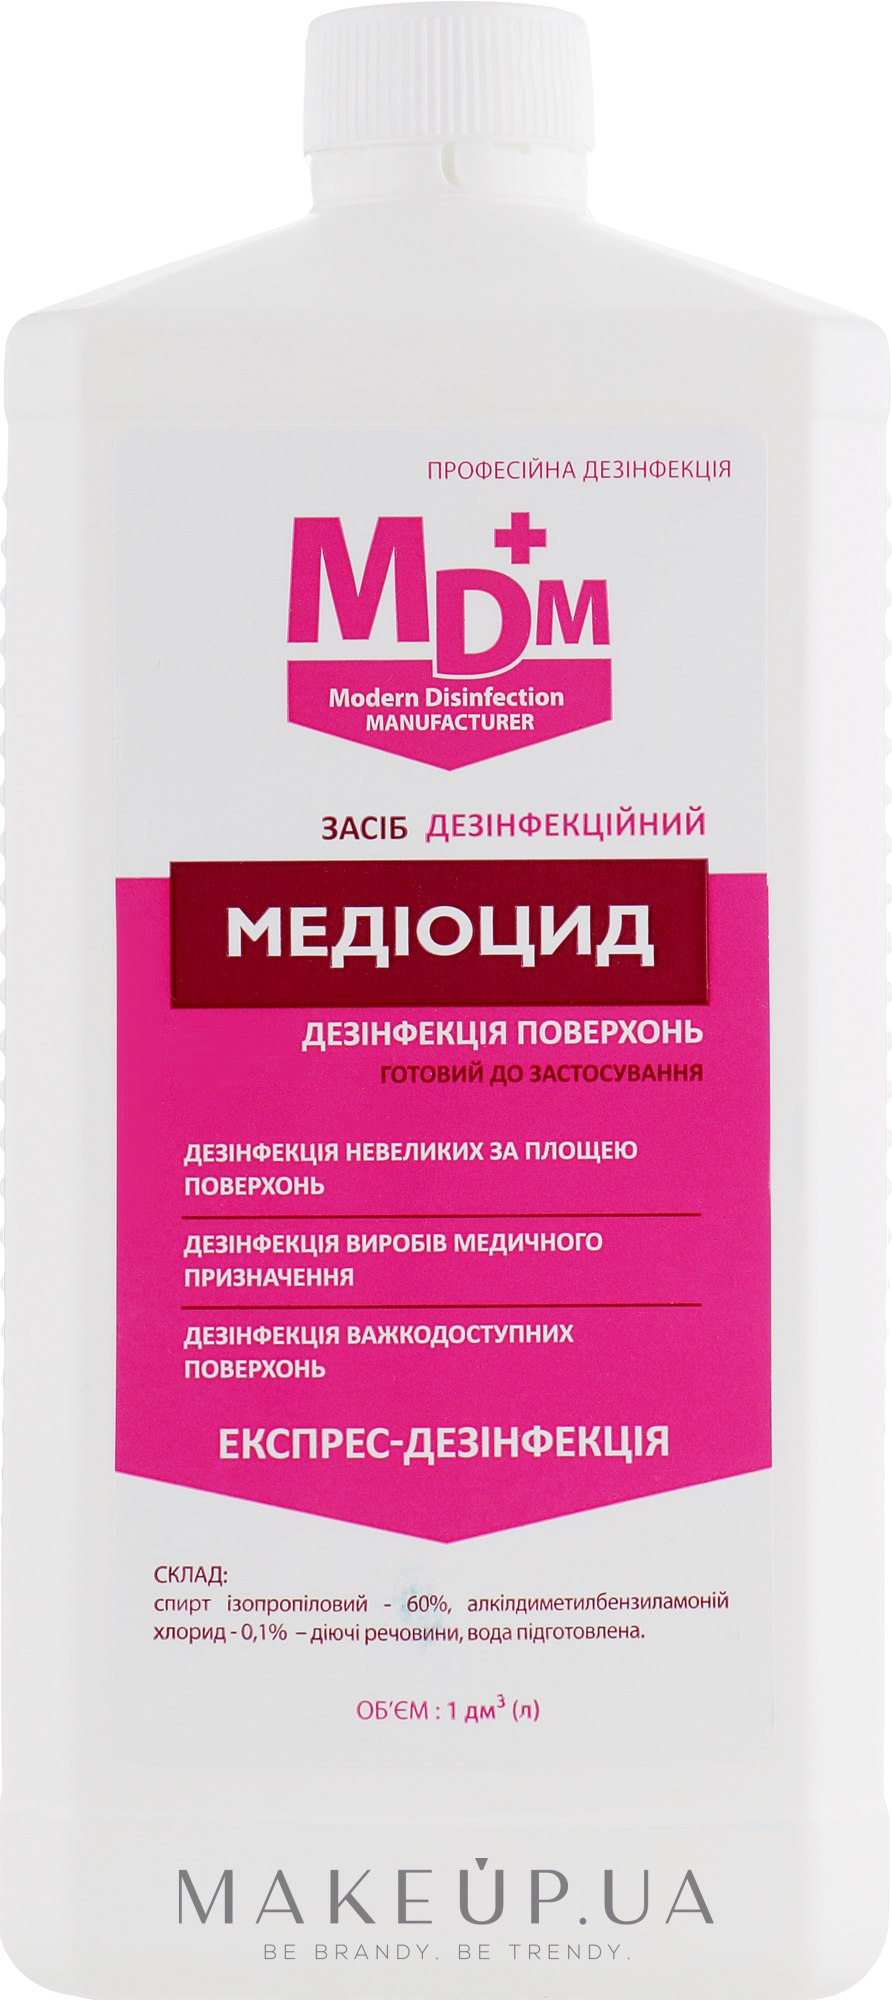 Медіоцид засіб для знезараження поверхонь - MDM — фото 1000ml